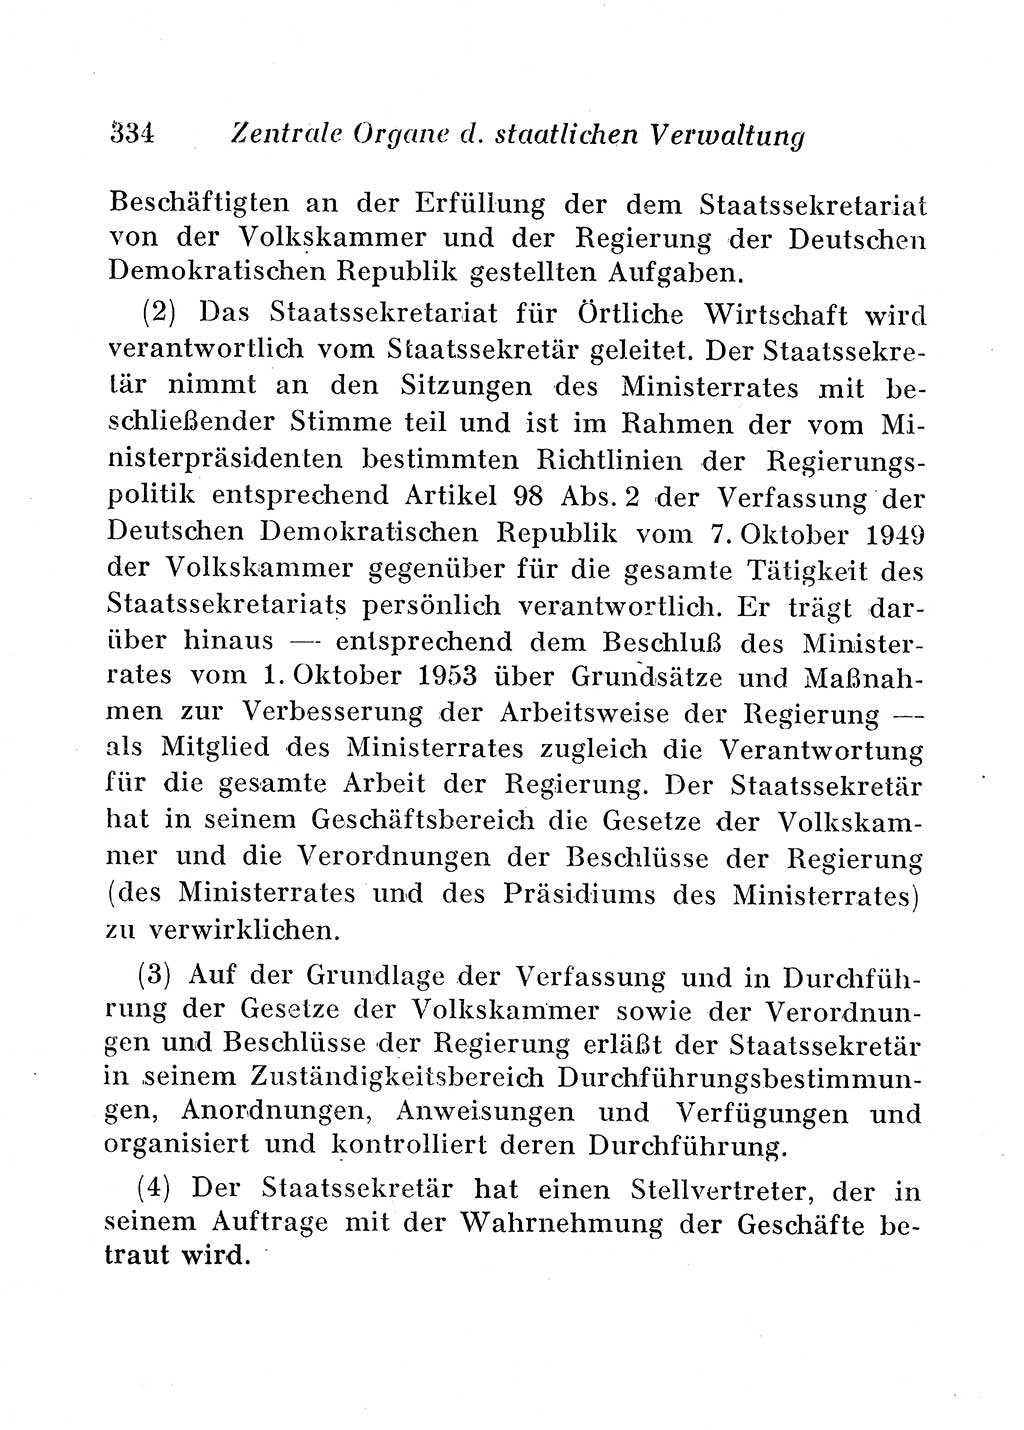 Staats- und verwaltungsrechtliche Gesetze der Deutschen Demokratischen Republik (DDR) 1958, Seite 334 (StVerwR Ges. DDR 1958, S. 334)